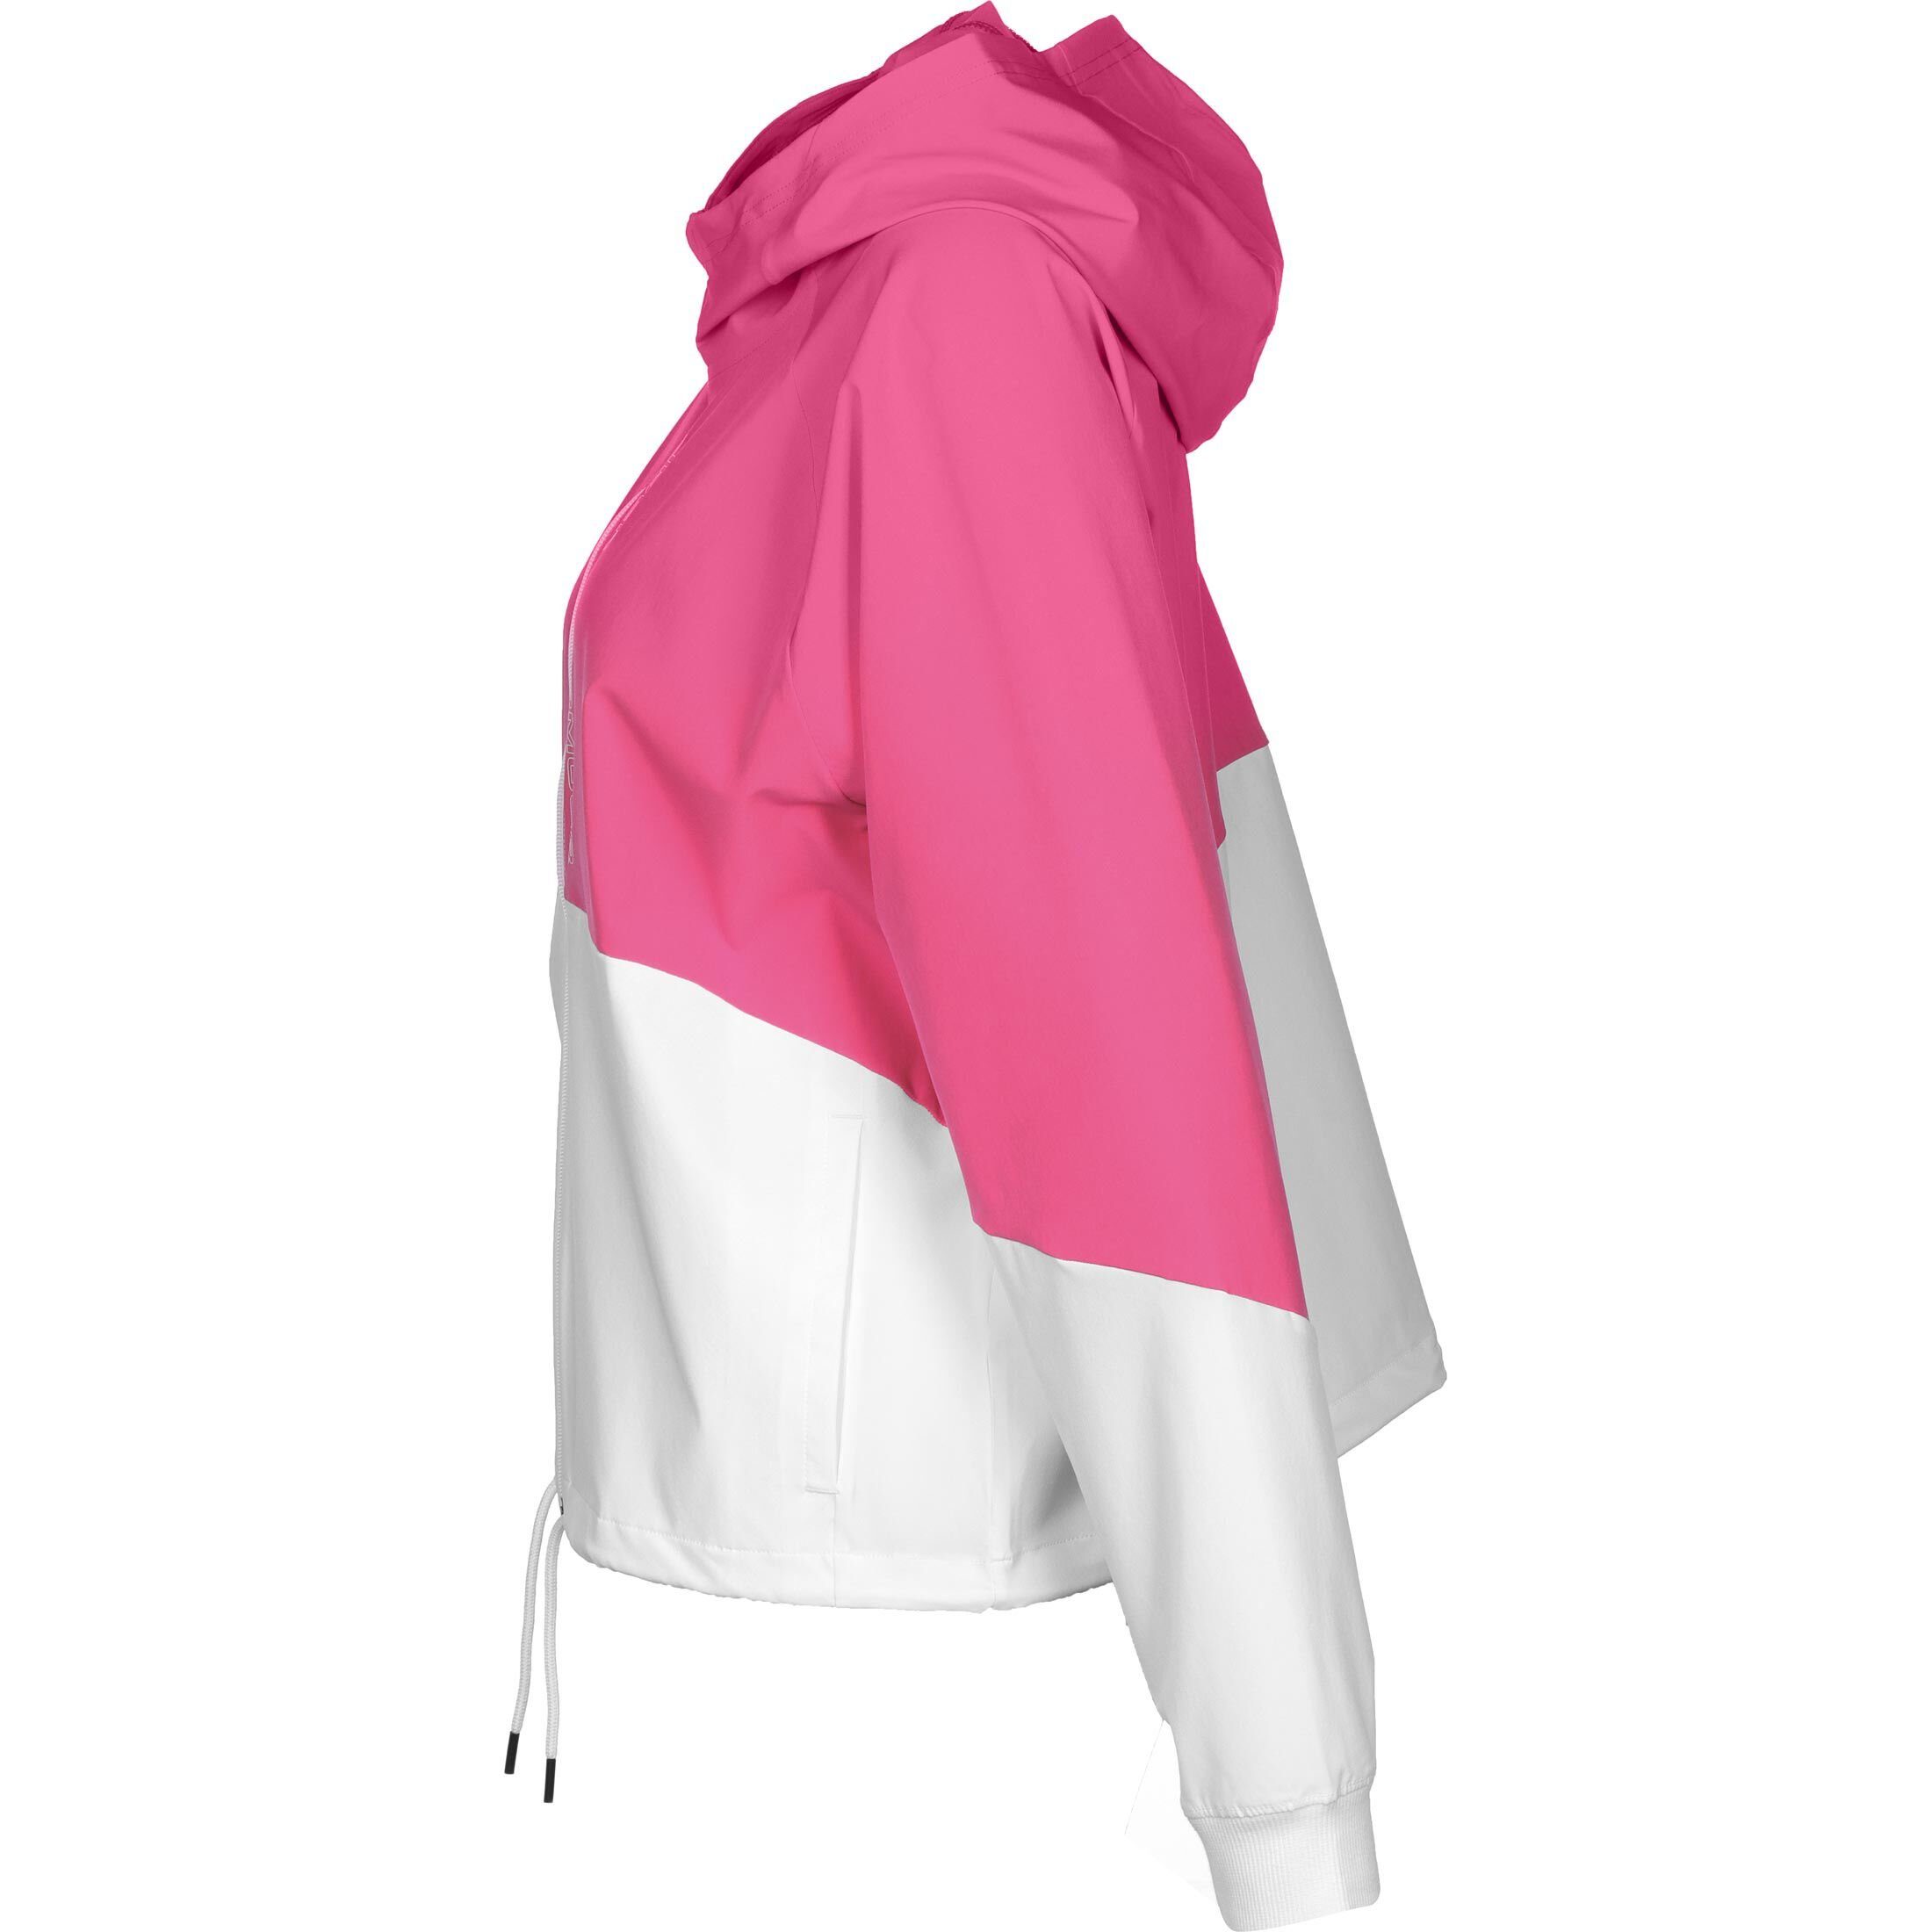 Damen / Under Jacke pink Armour® Woven weiß Trainingsjacke